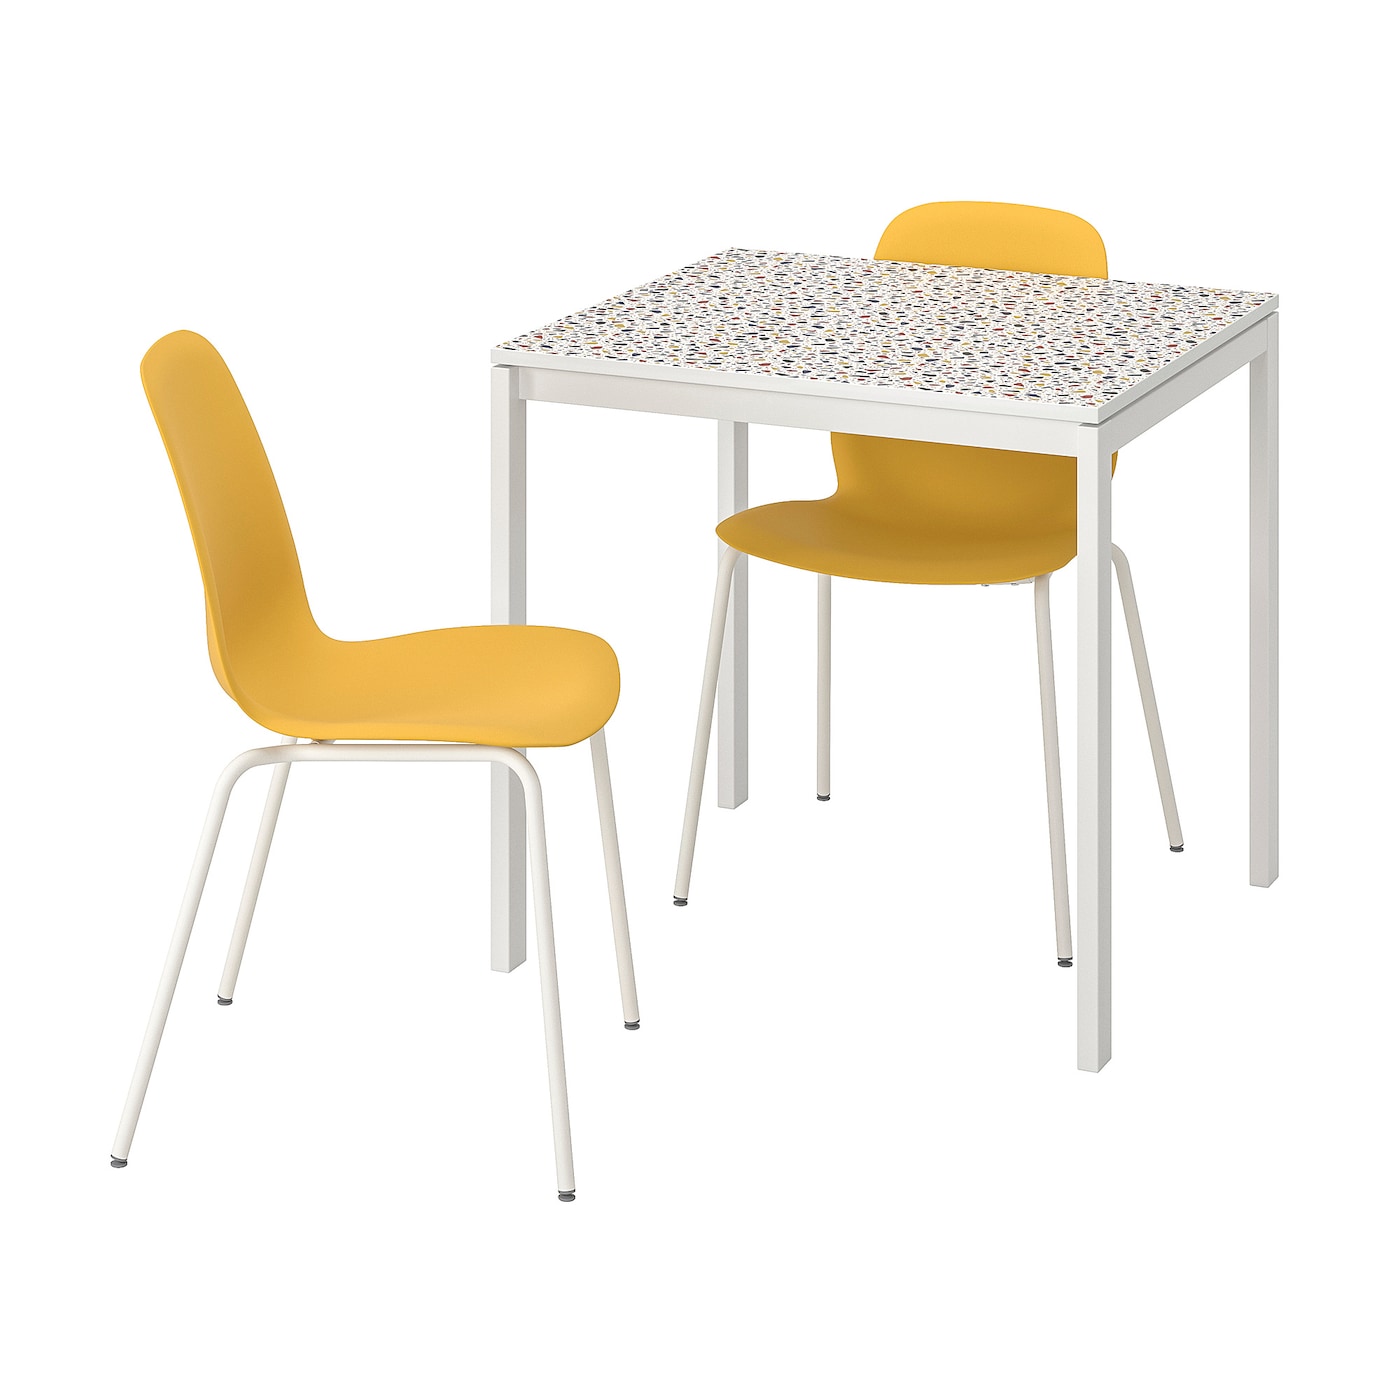 MELLTORP / LEIFARNE Tisch und 2 Stühle  -  - Möbel Ideen für dein Zuhause von Home Trends. Möbel Trends von Social Media Influencer für dein Skandi Zuhause.